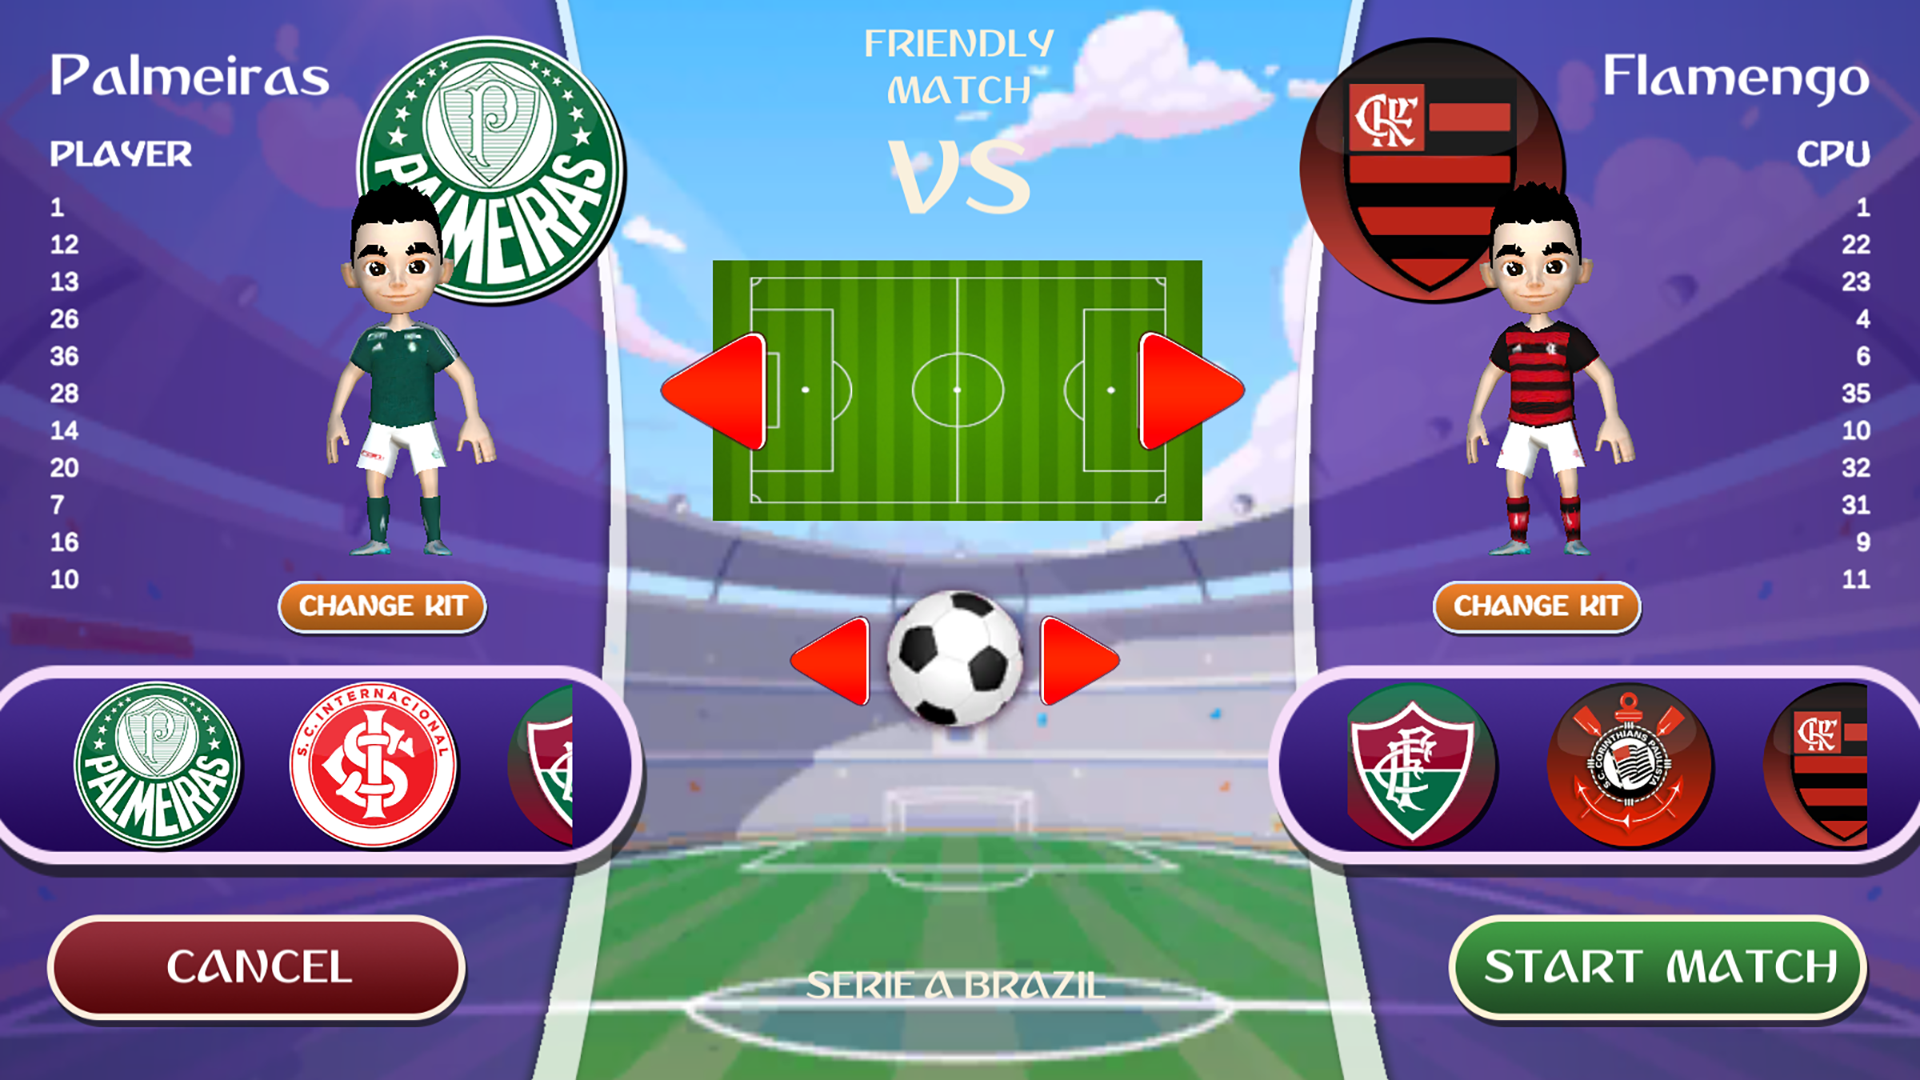 Download Futebol Ao Vivo Free for Android - Futebol Ao Vivo APK Download 